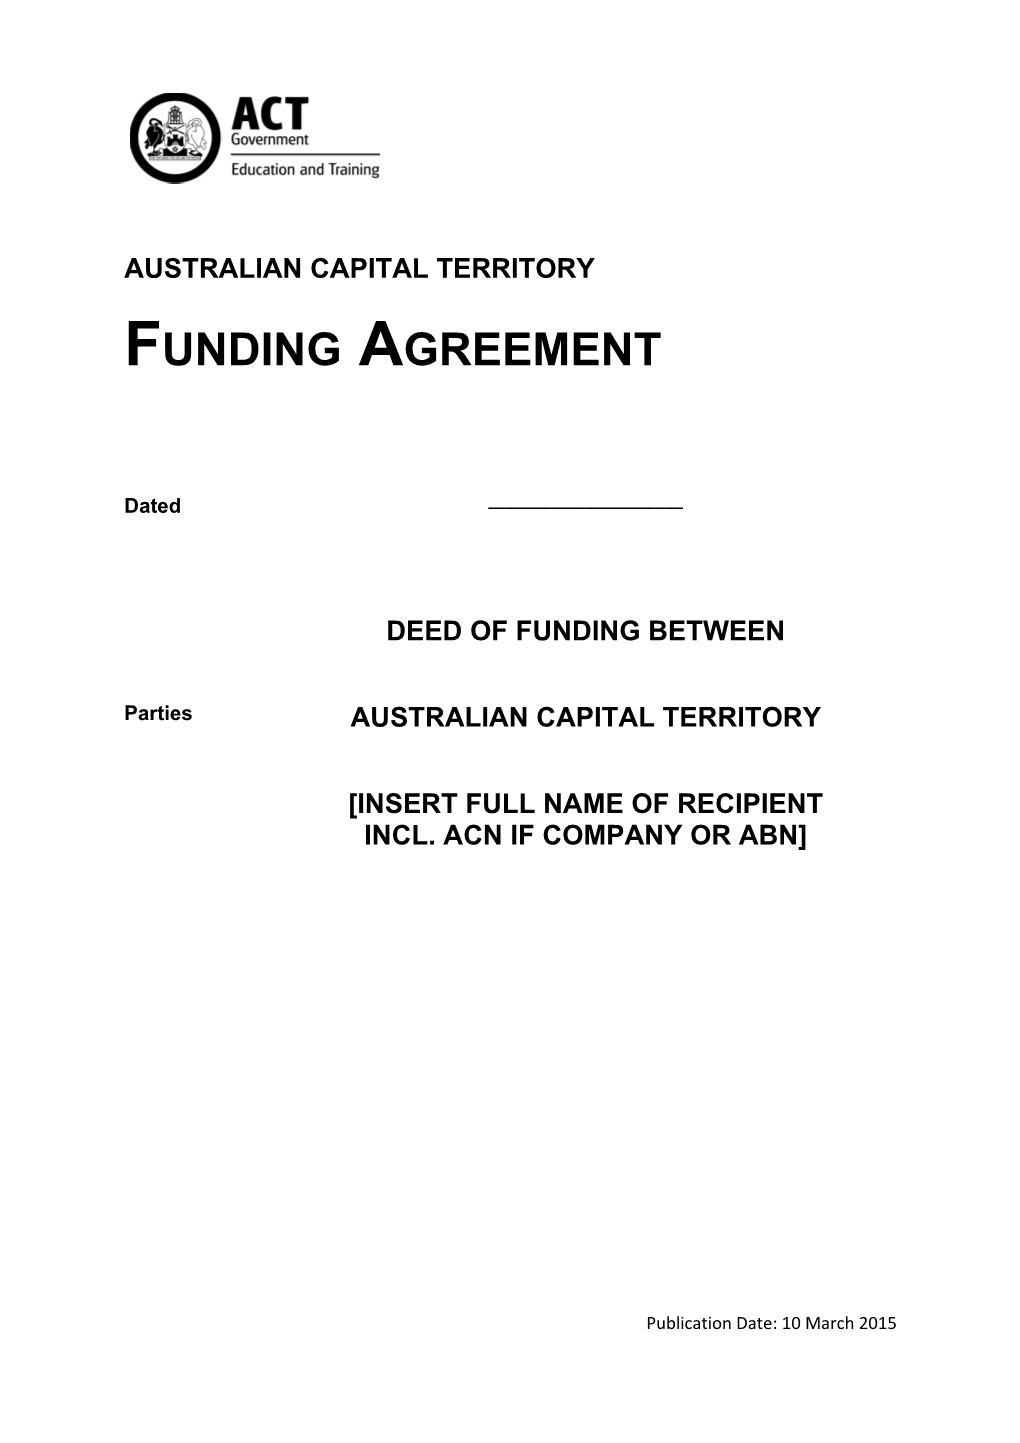 ACT Funding Deed